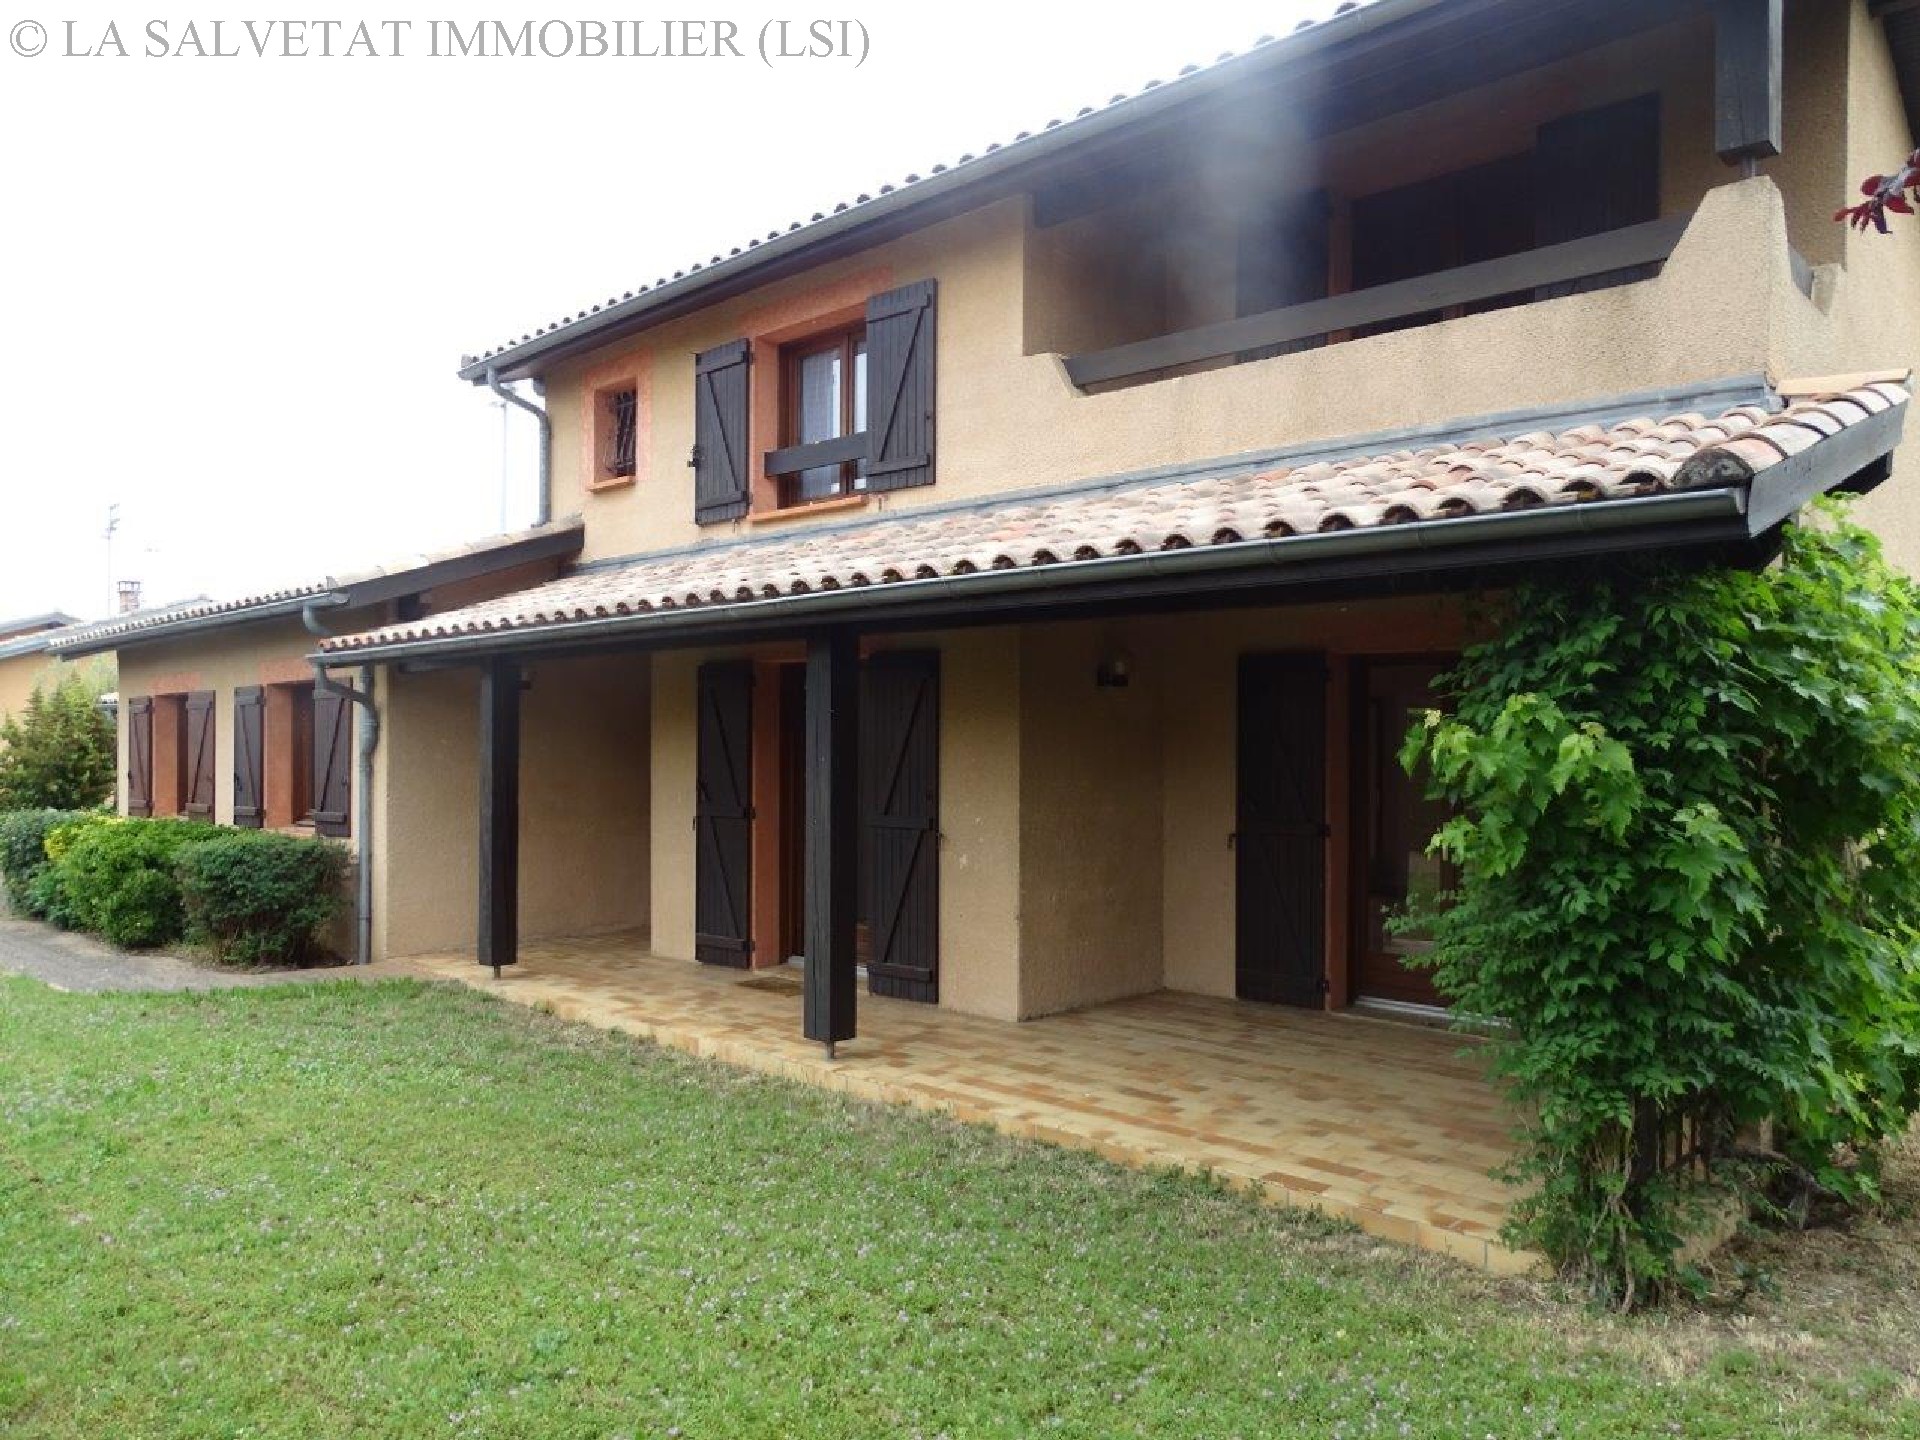 Vente maison-villa - PIBRAC<br>128 m², 6 pièces